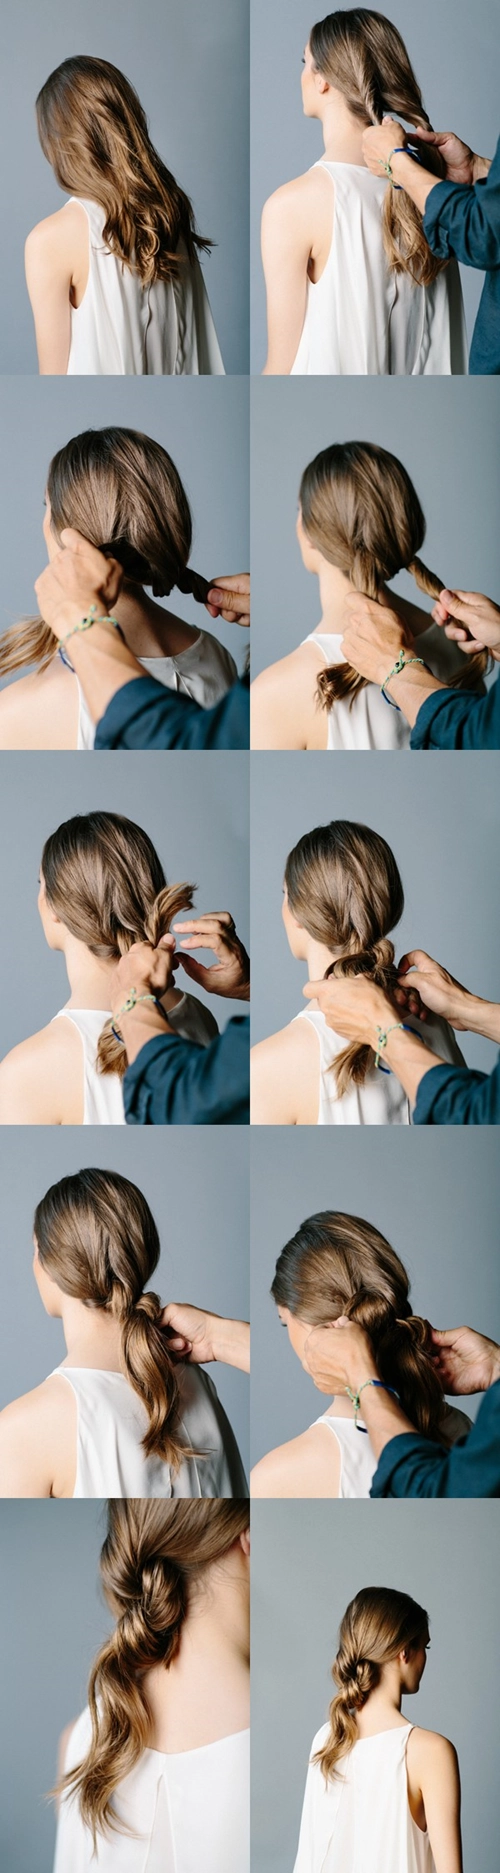 6 kiểu tóc dễ làm dễ đẹp hơn khi đầu bẩn - 9